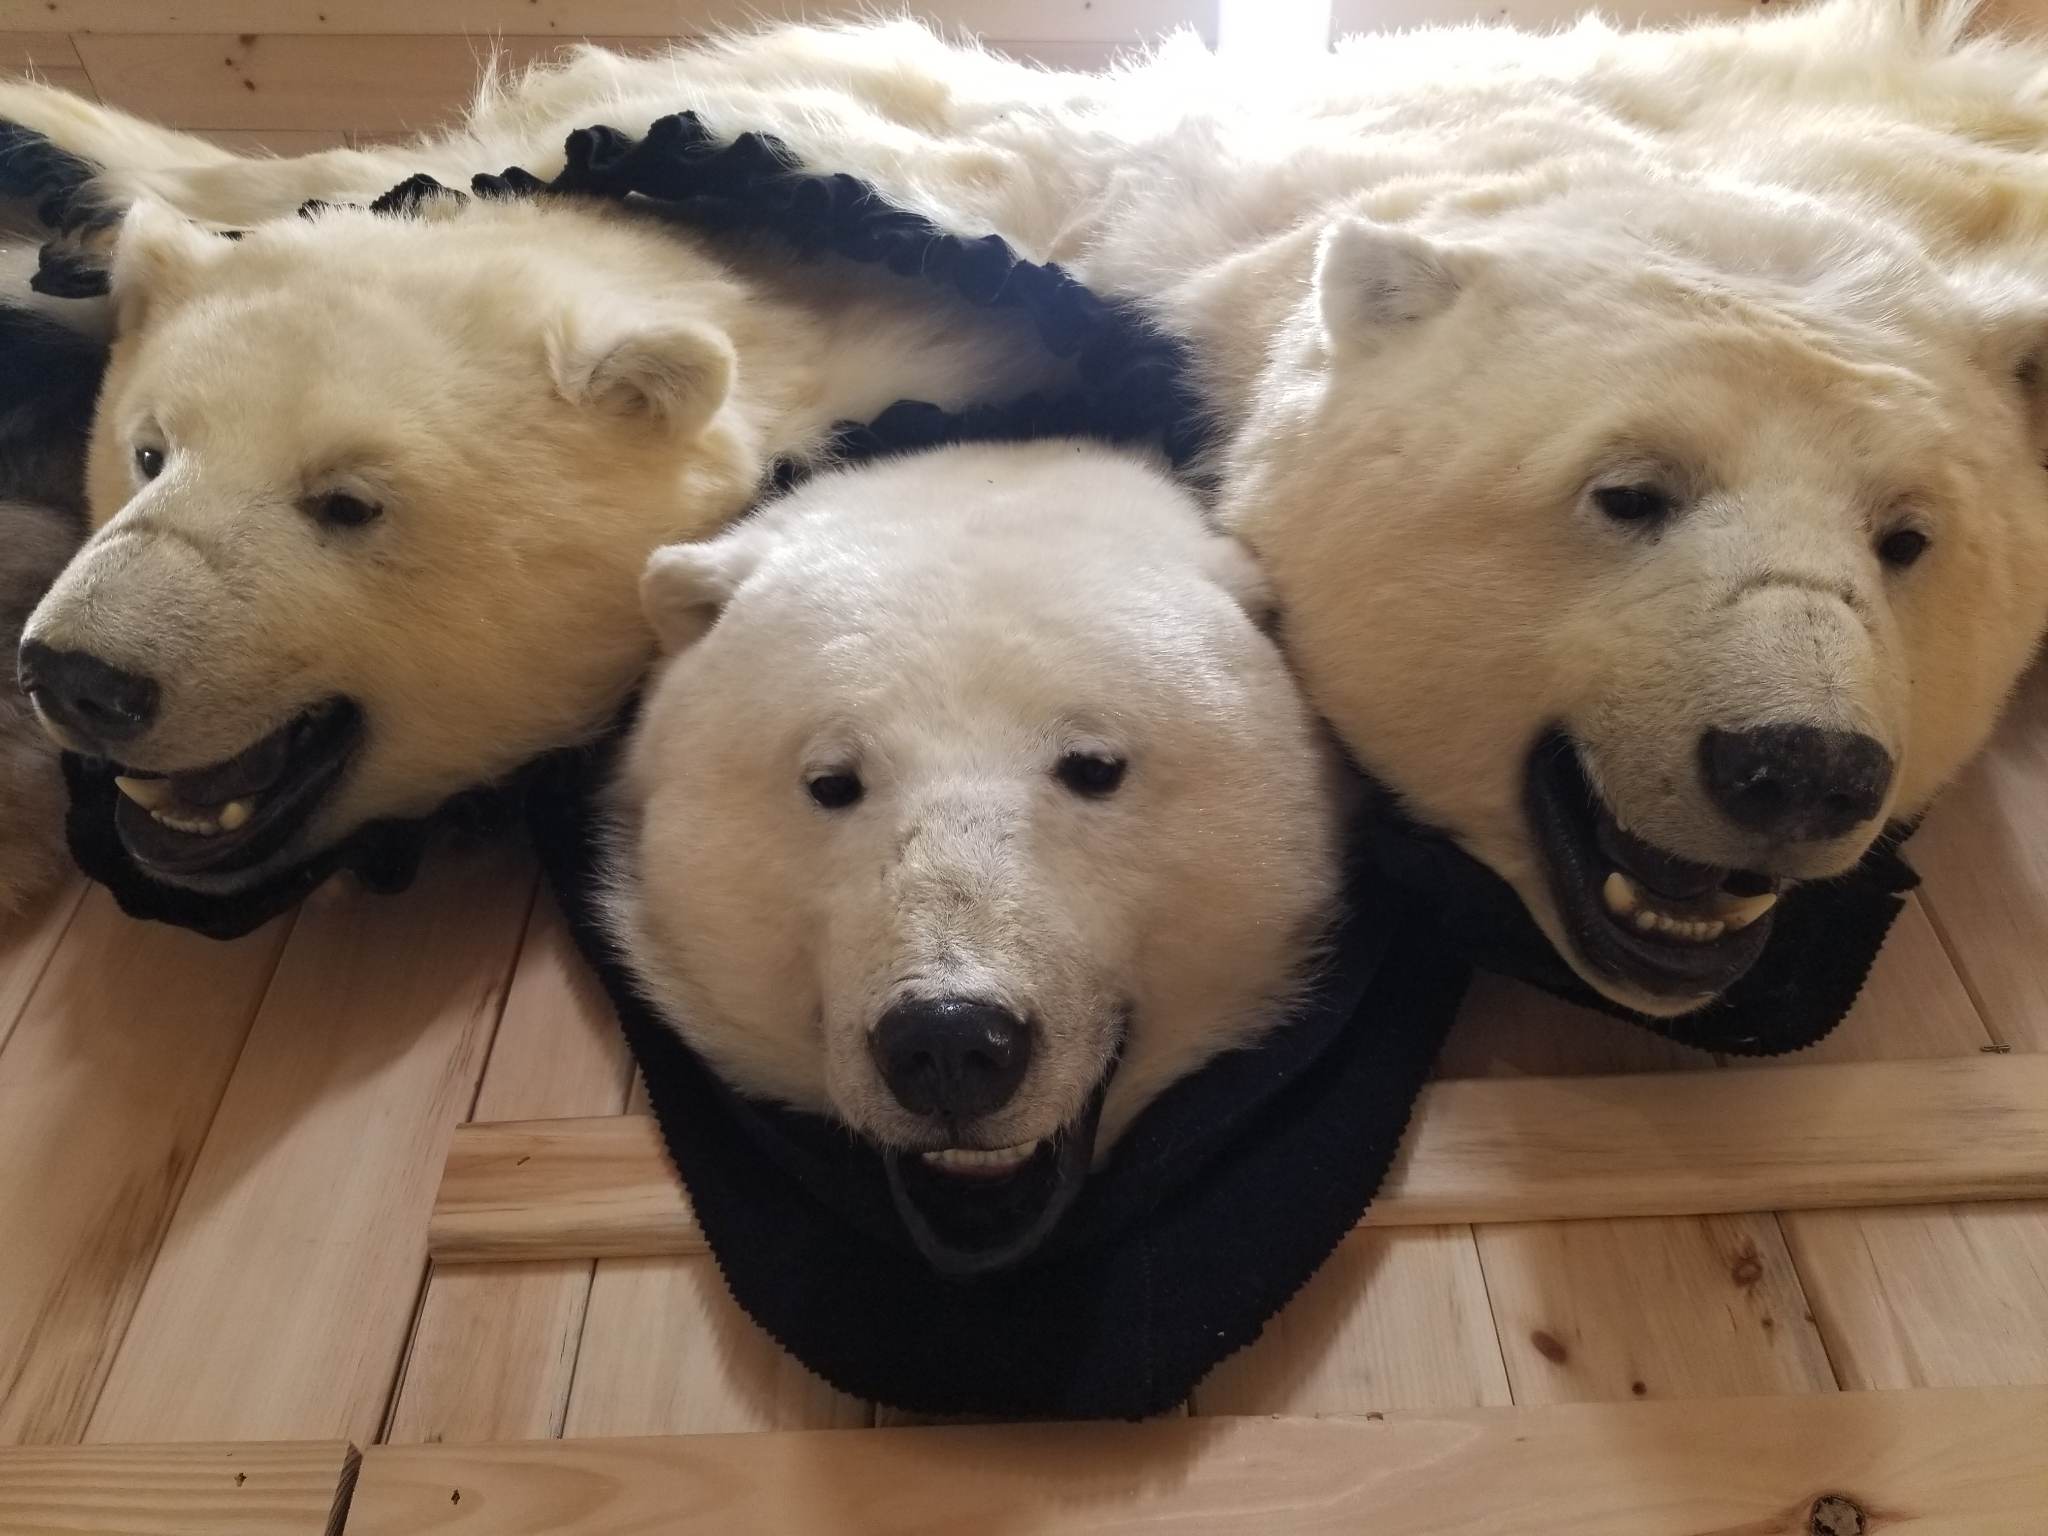 Exportable Polar Bear Rug - Pre-Order Only